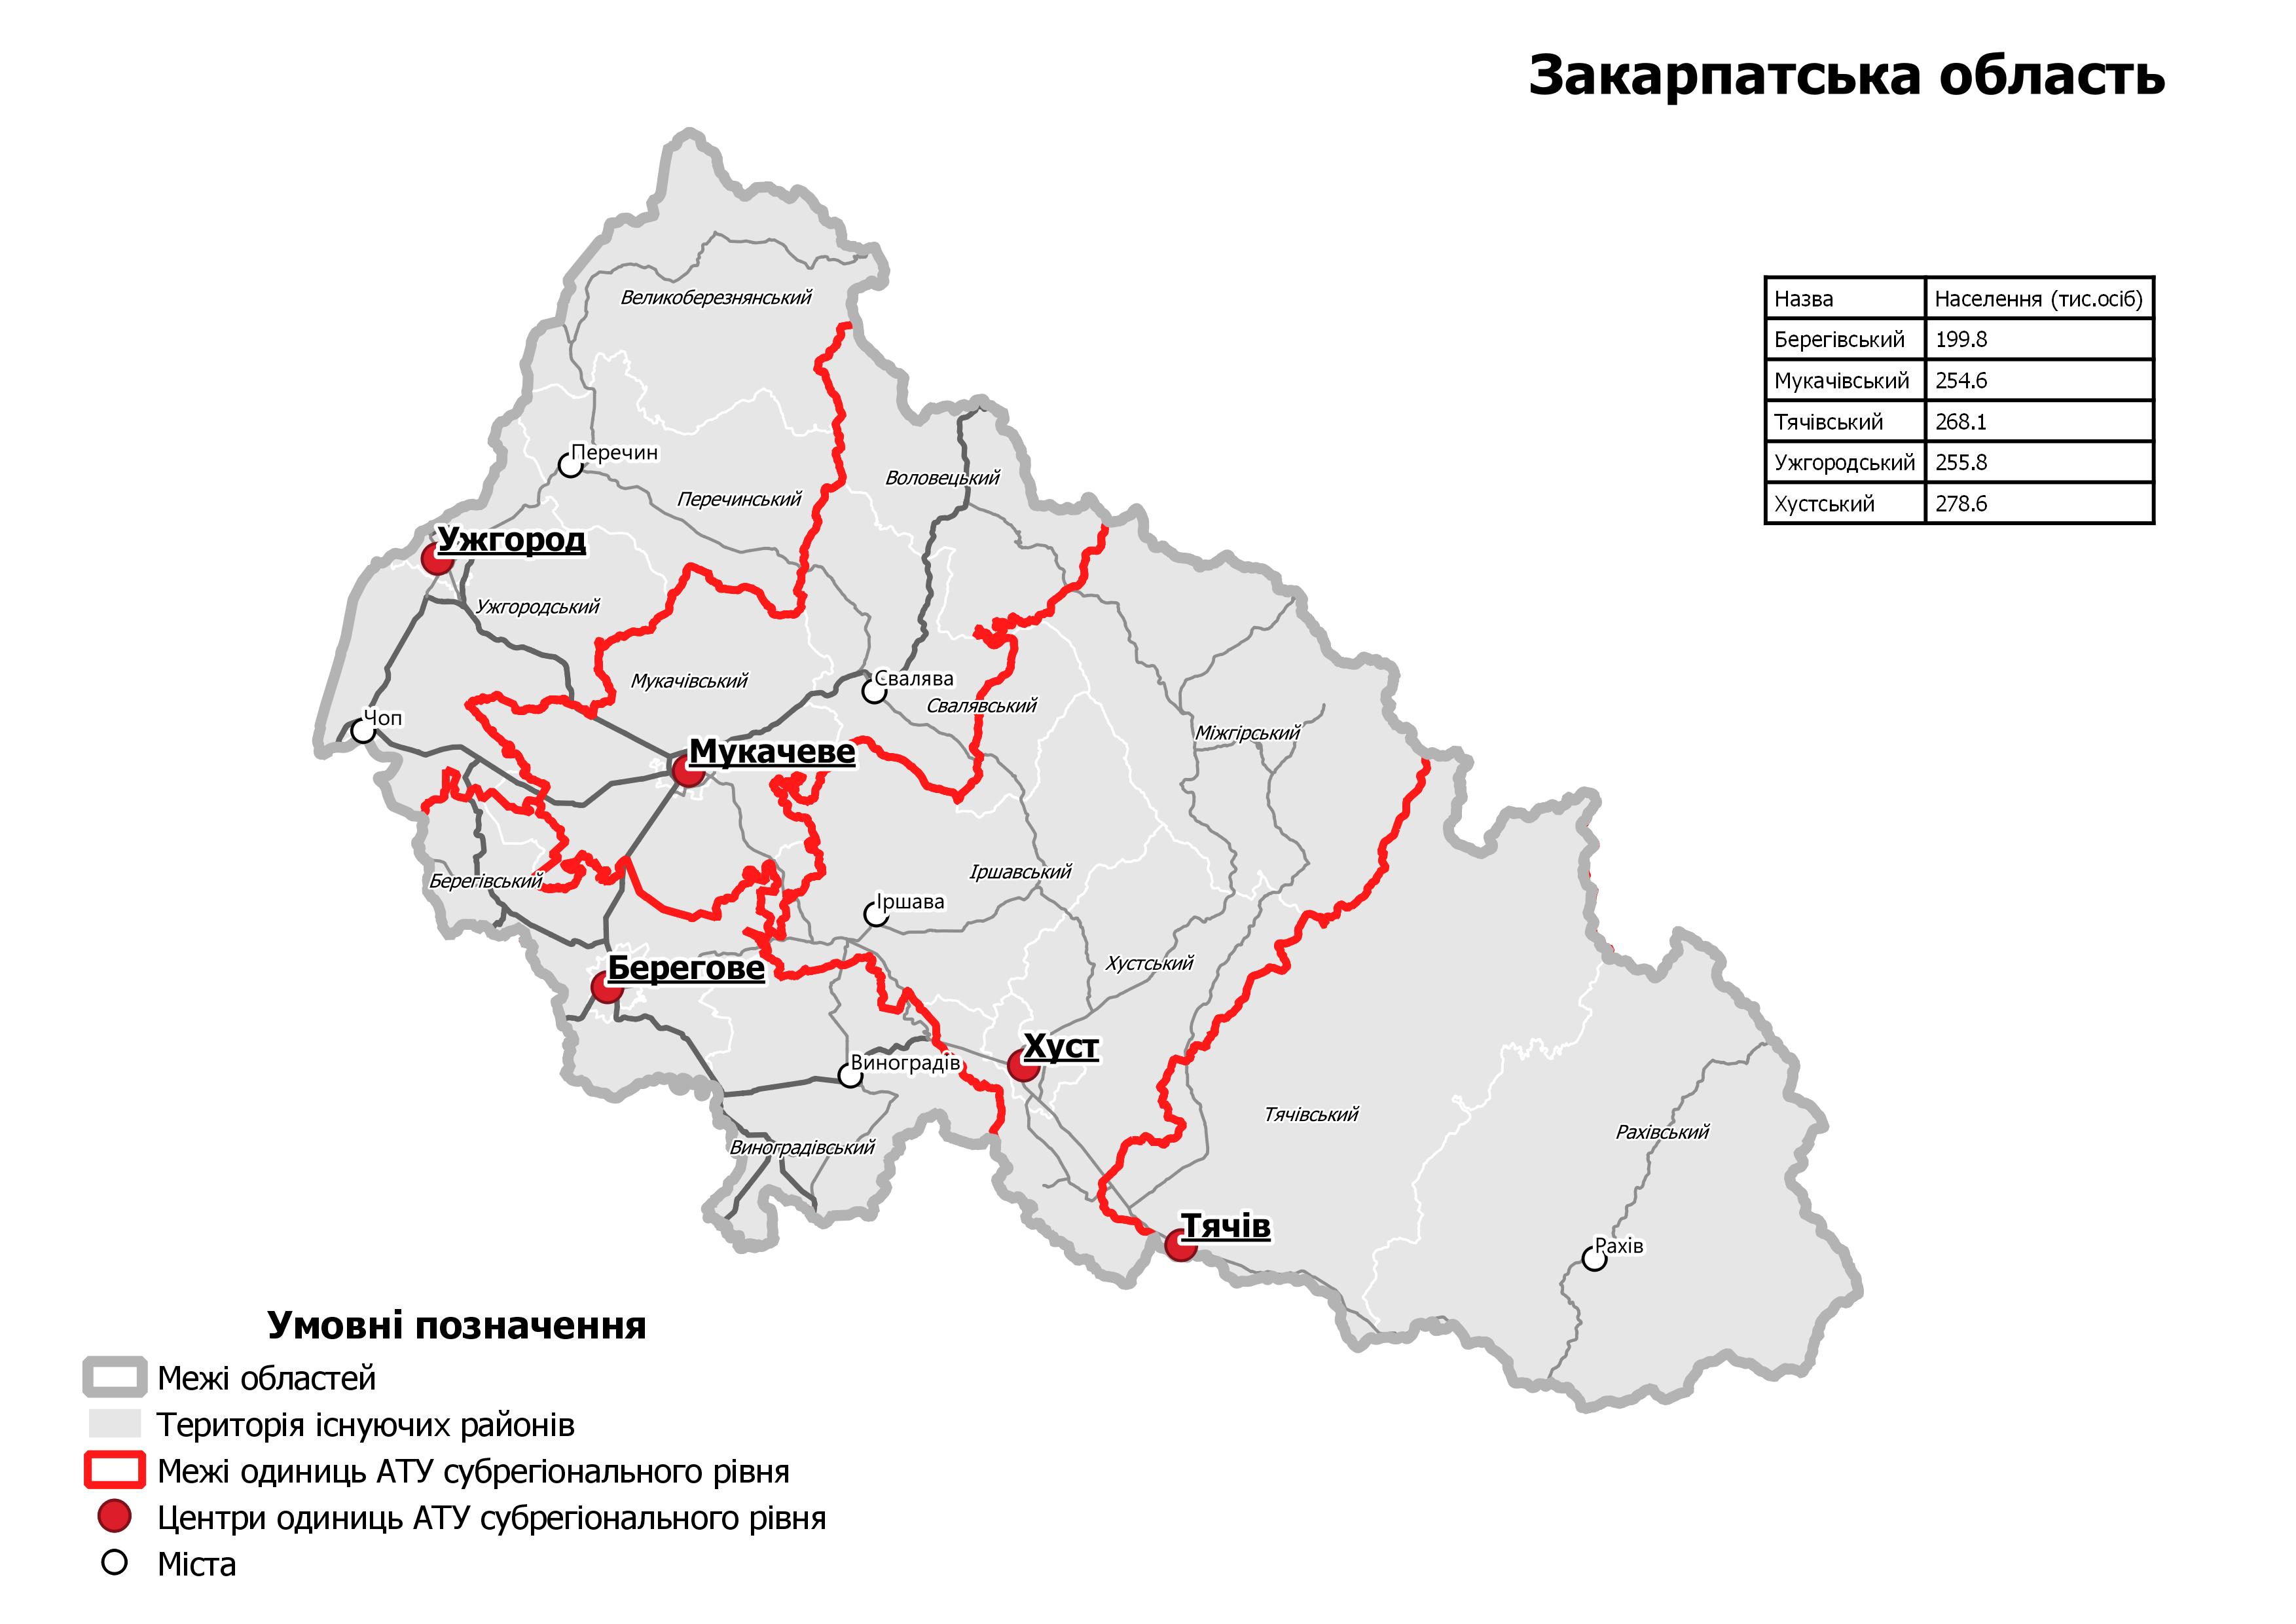 Карта нового деления на районы Закарпатской области